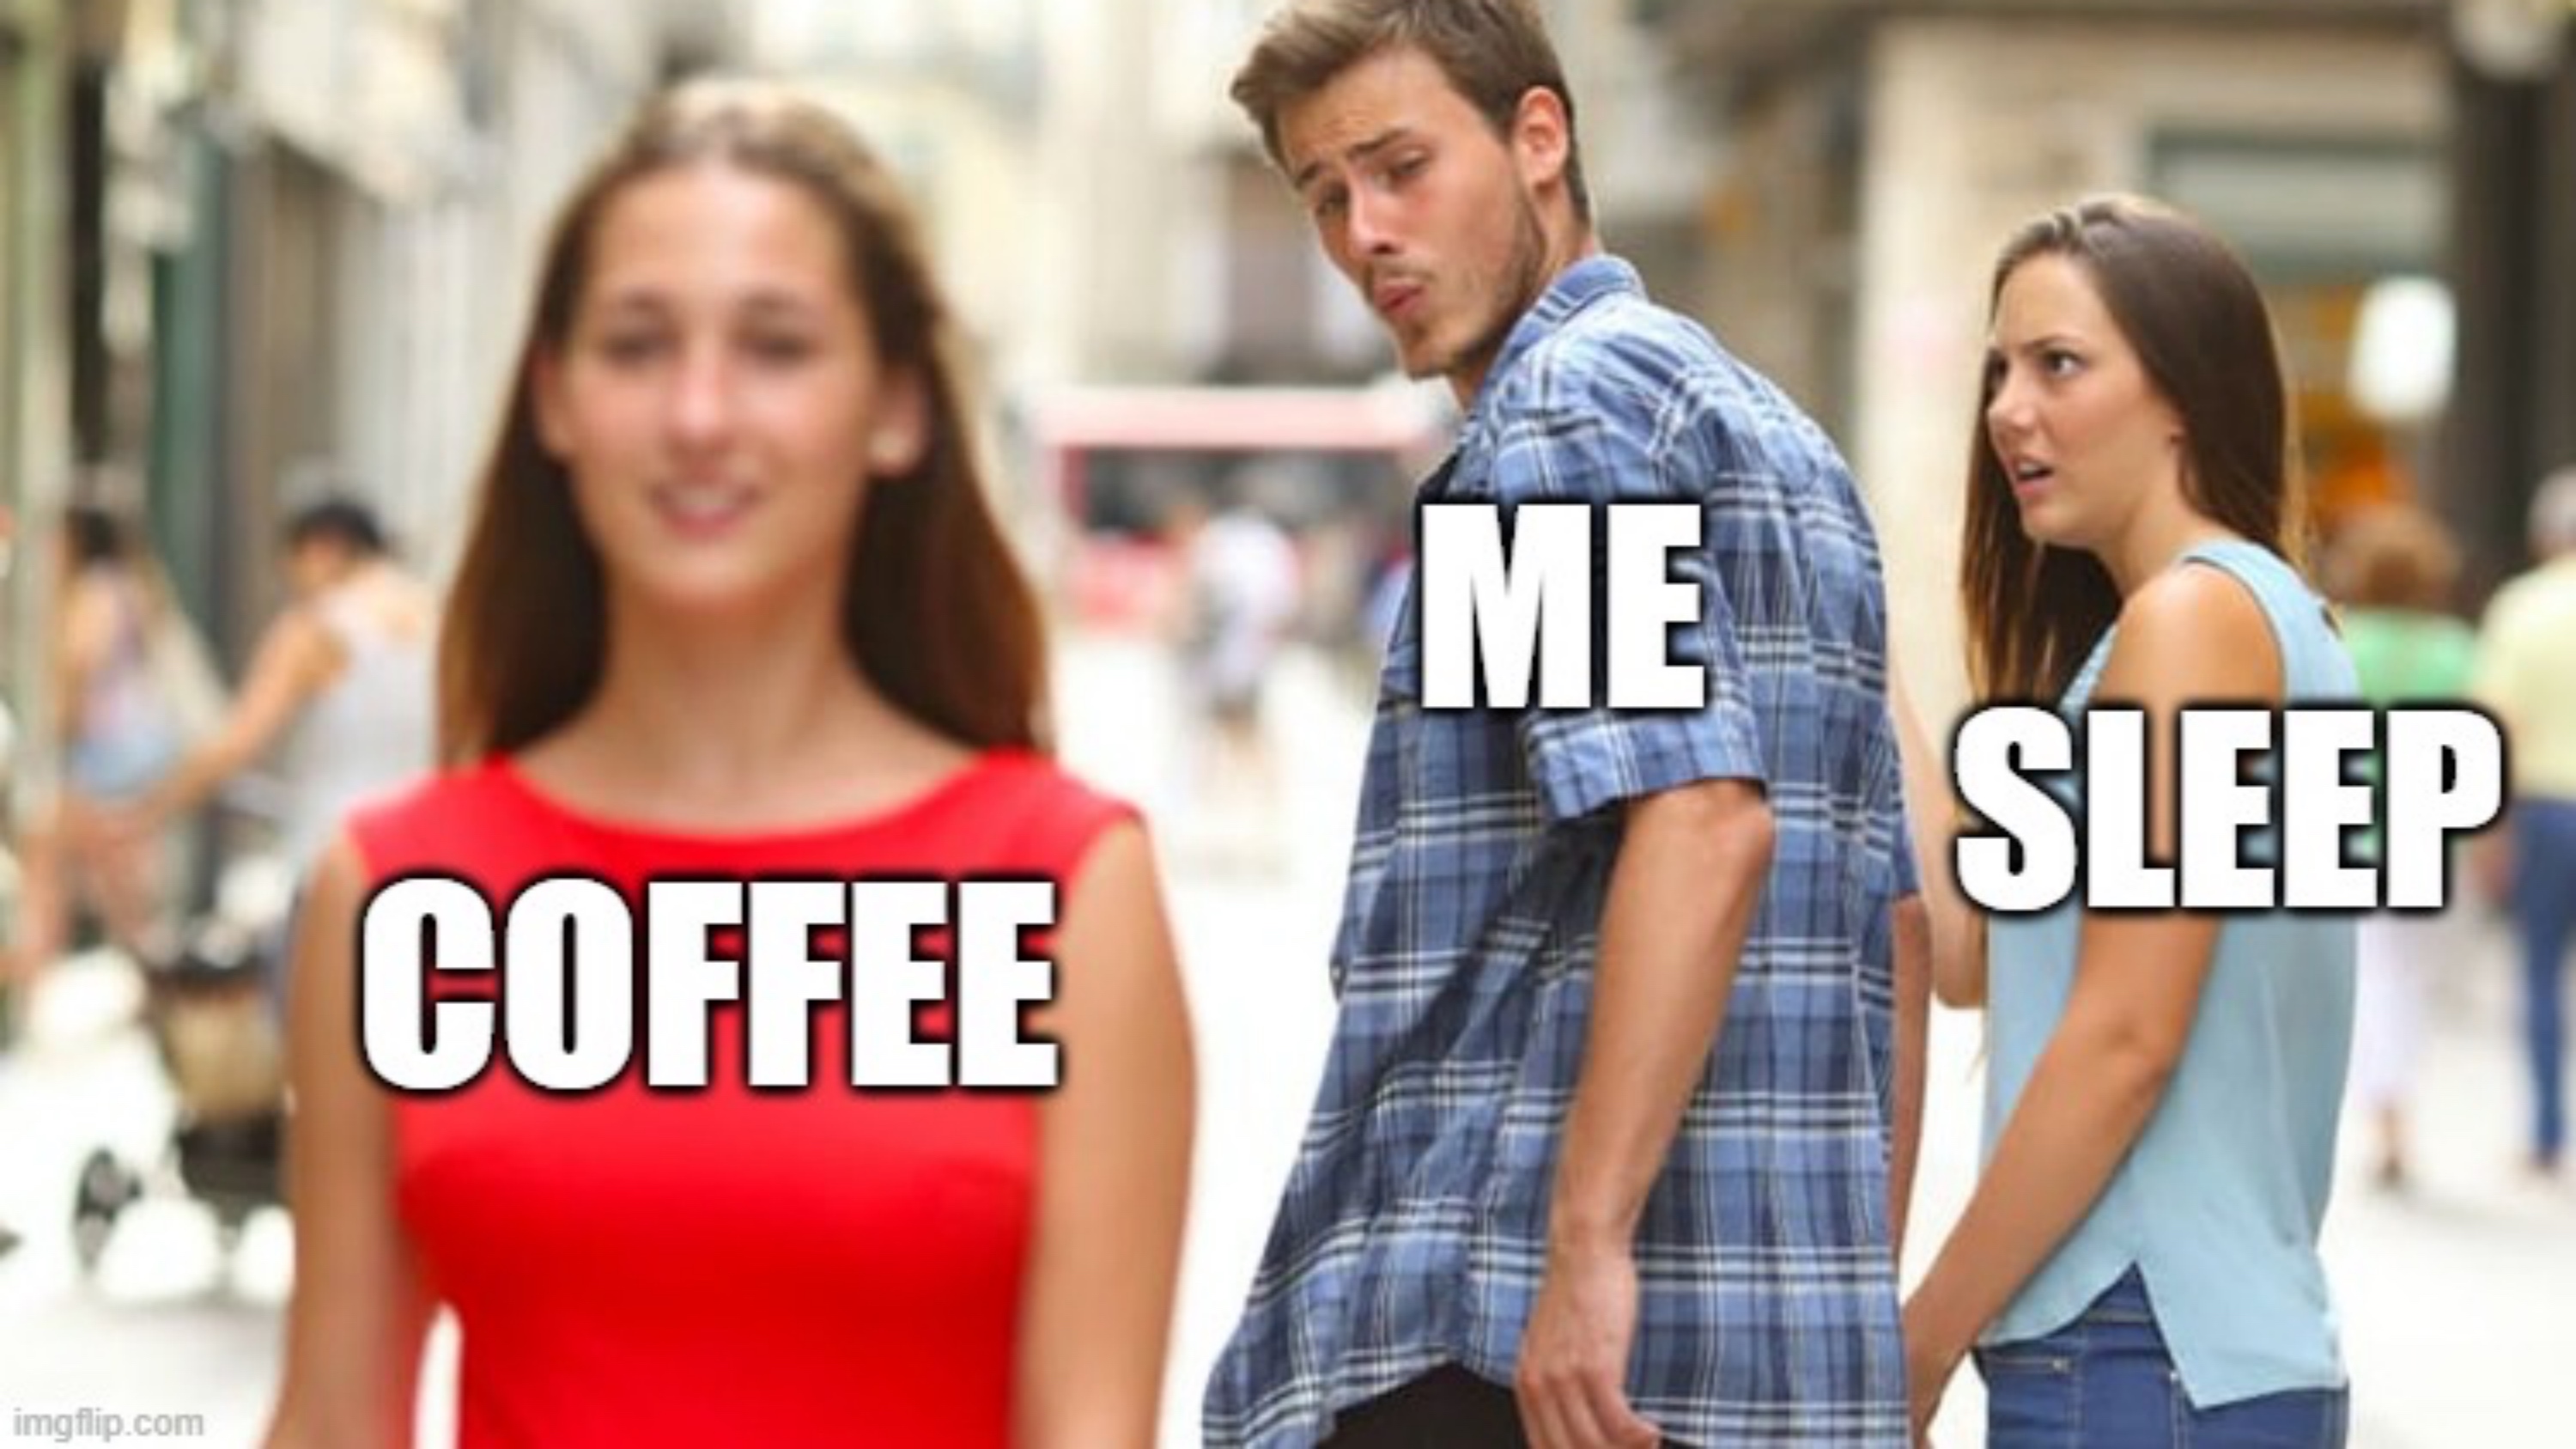 coffee and sleep memes